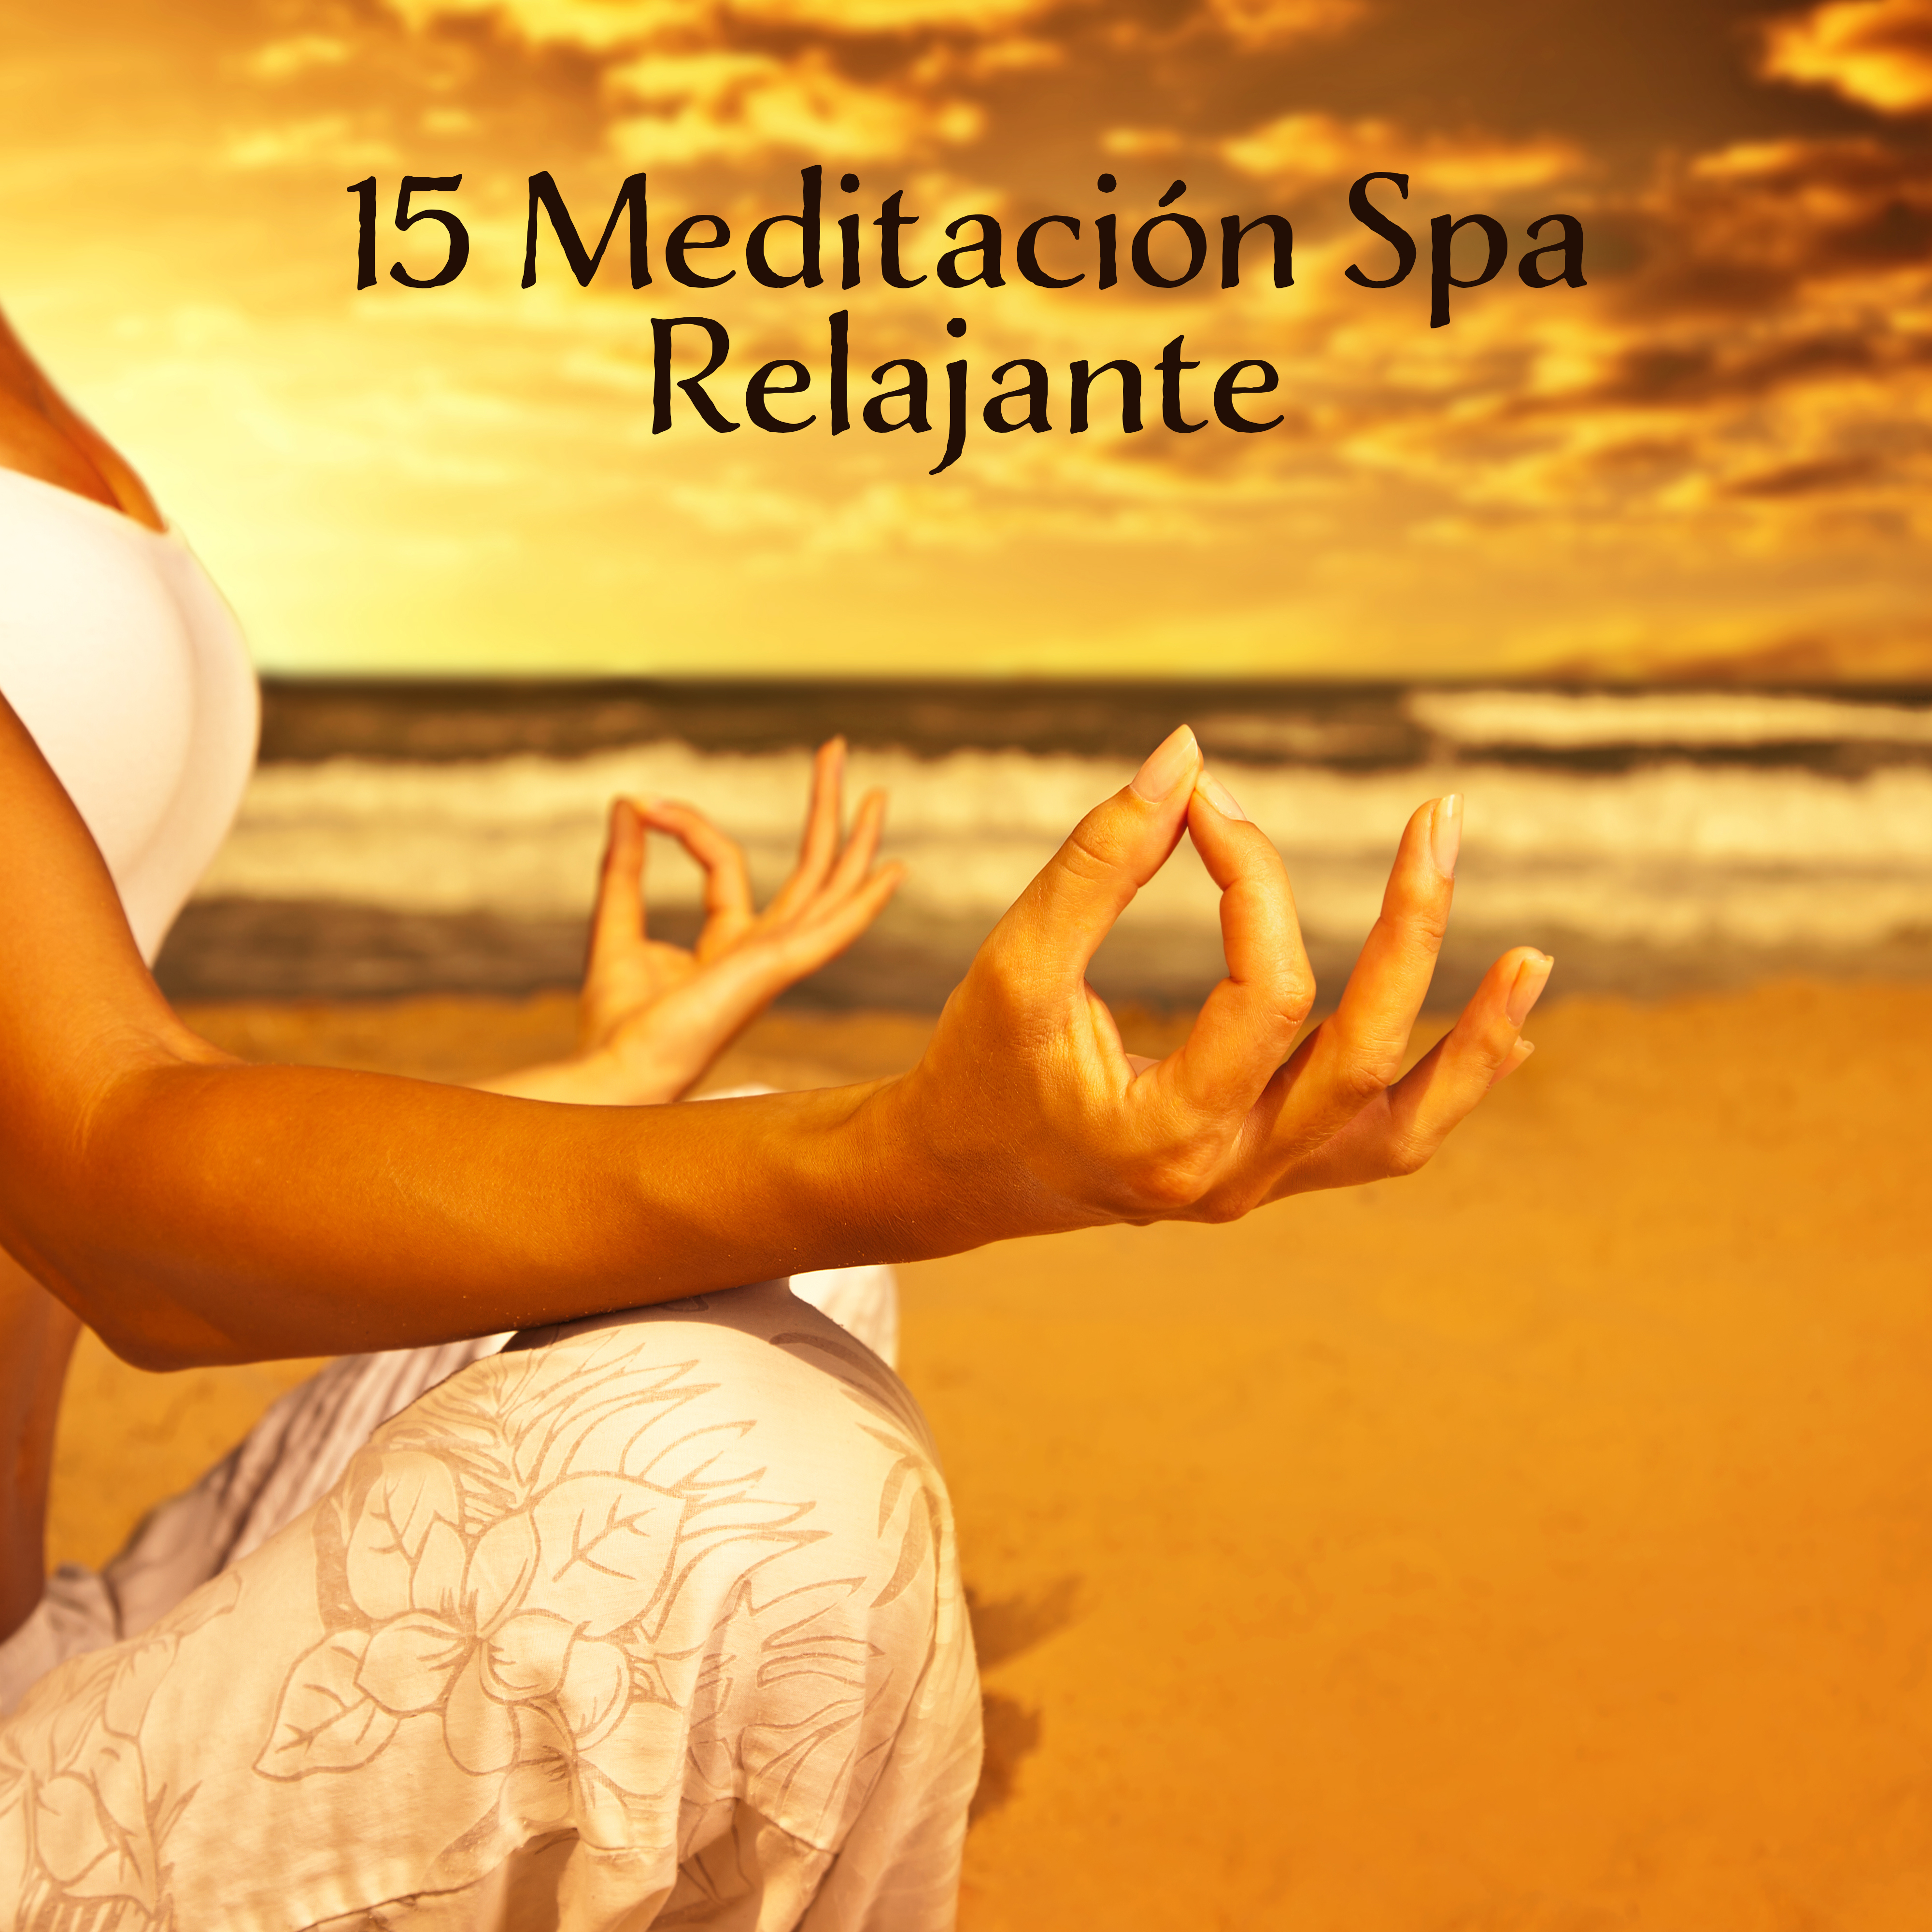 15 Meditacio n Spa Relajante  Mu sica para la Relajacio n, Meditacio n Profunda, Spa, Masaje, Sue o, Armoni a Interior, Calma